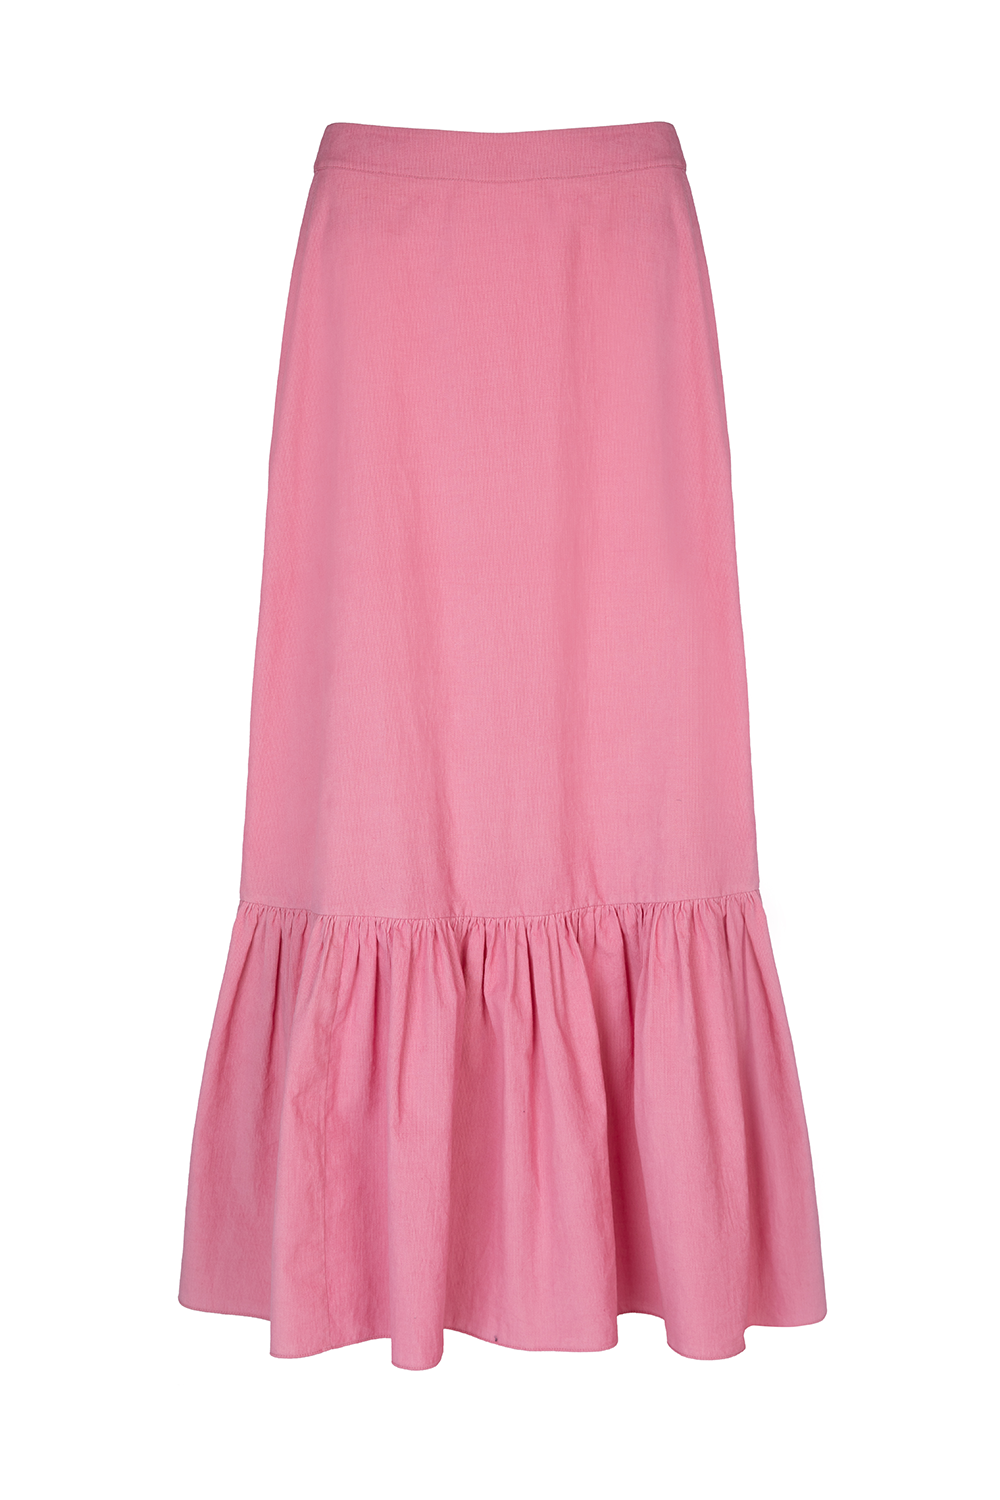 Cropped Rose Nalini Corduroy Skirt – Beulah London